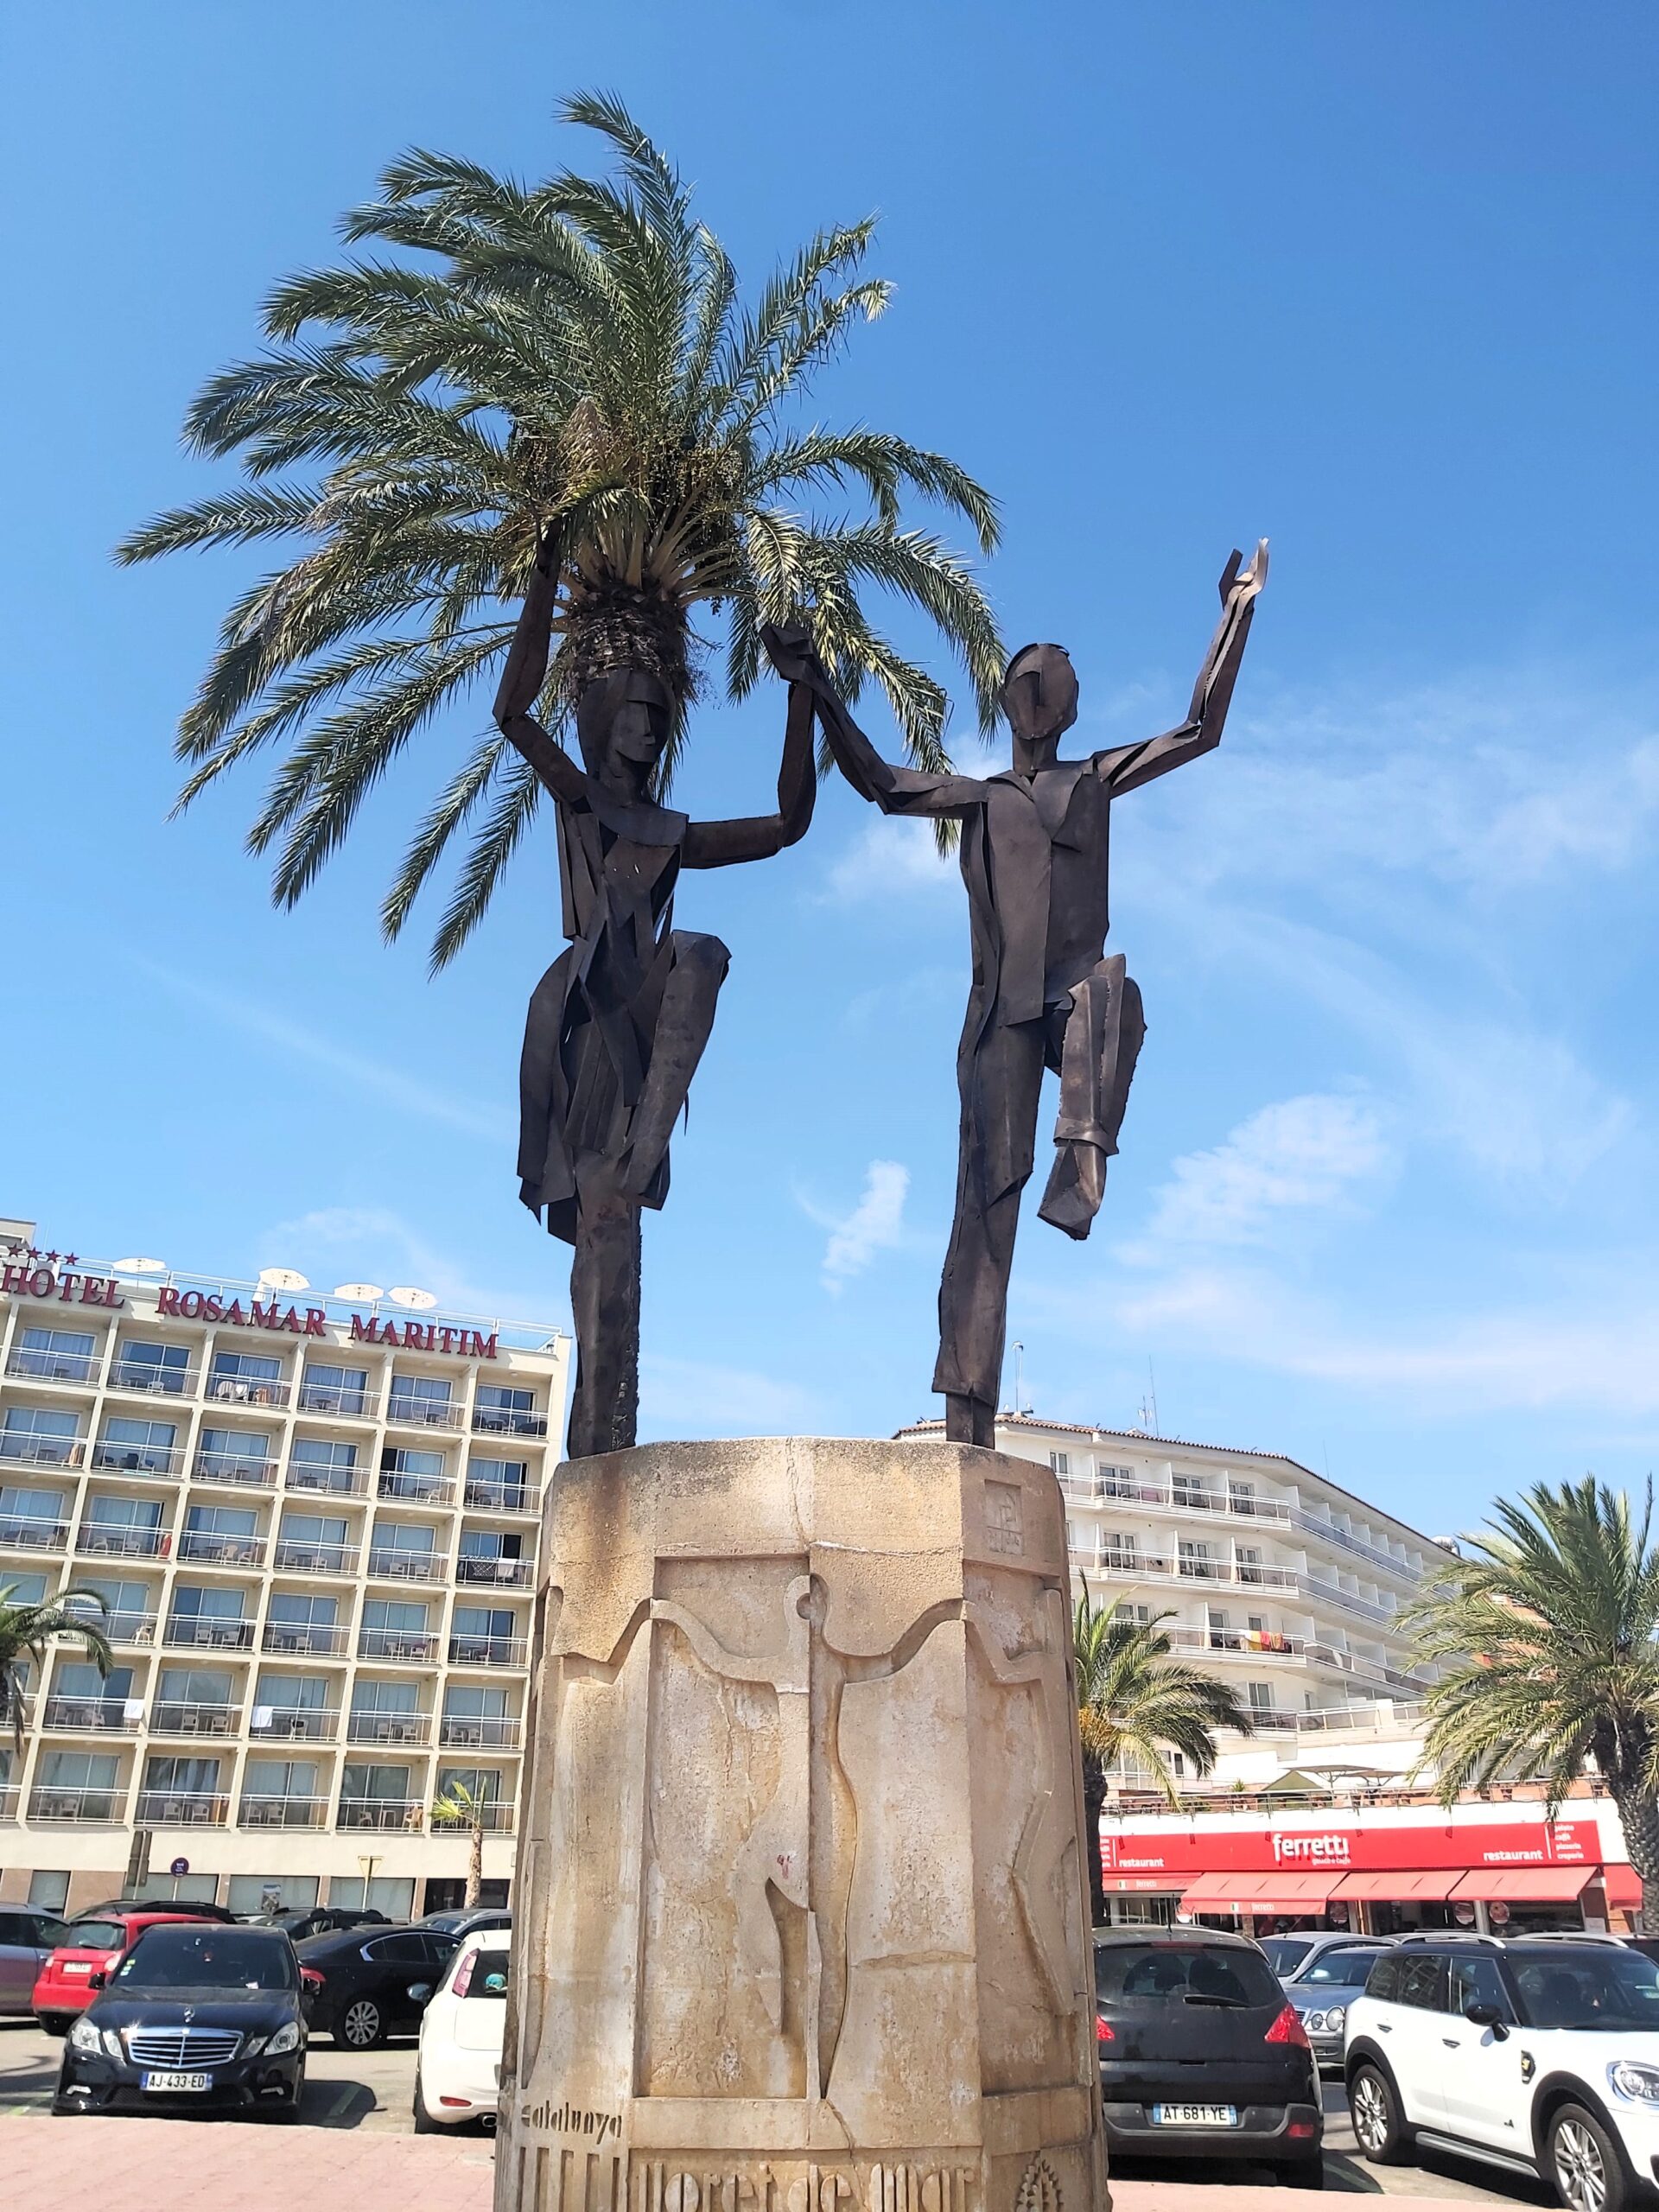 Dancing figures statue in Lloret de Mar, Spain